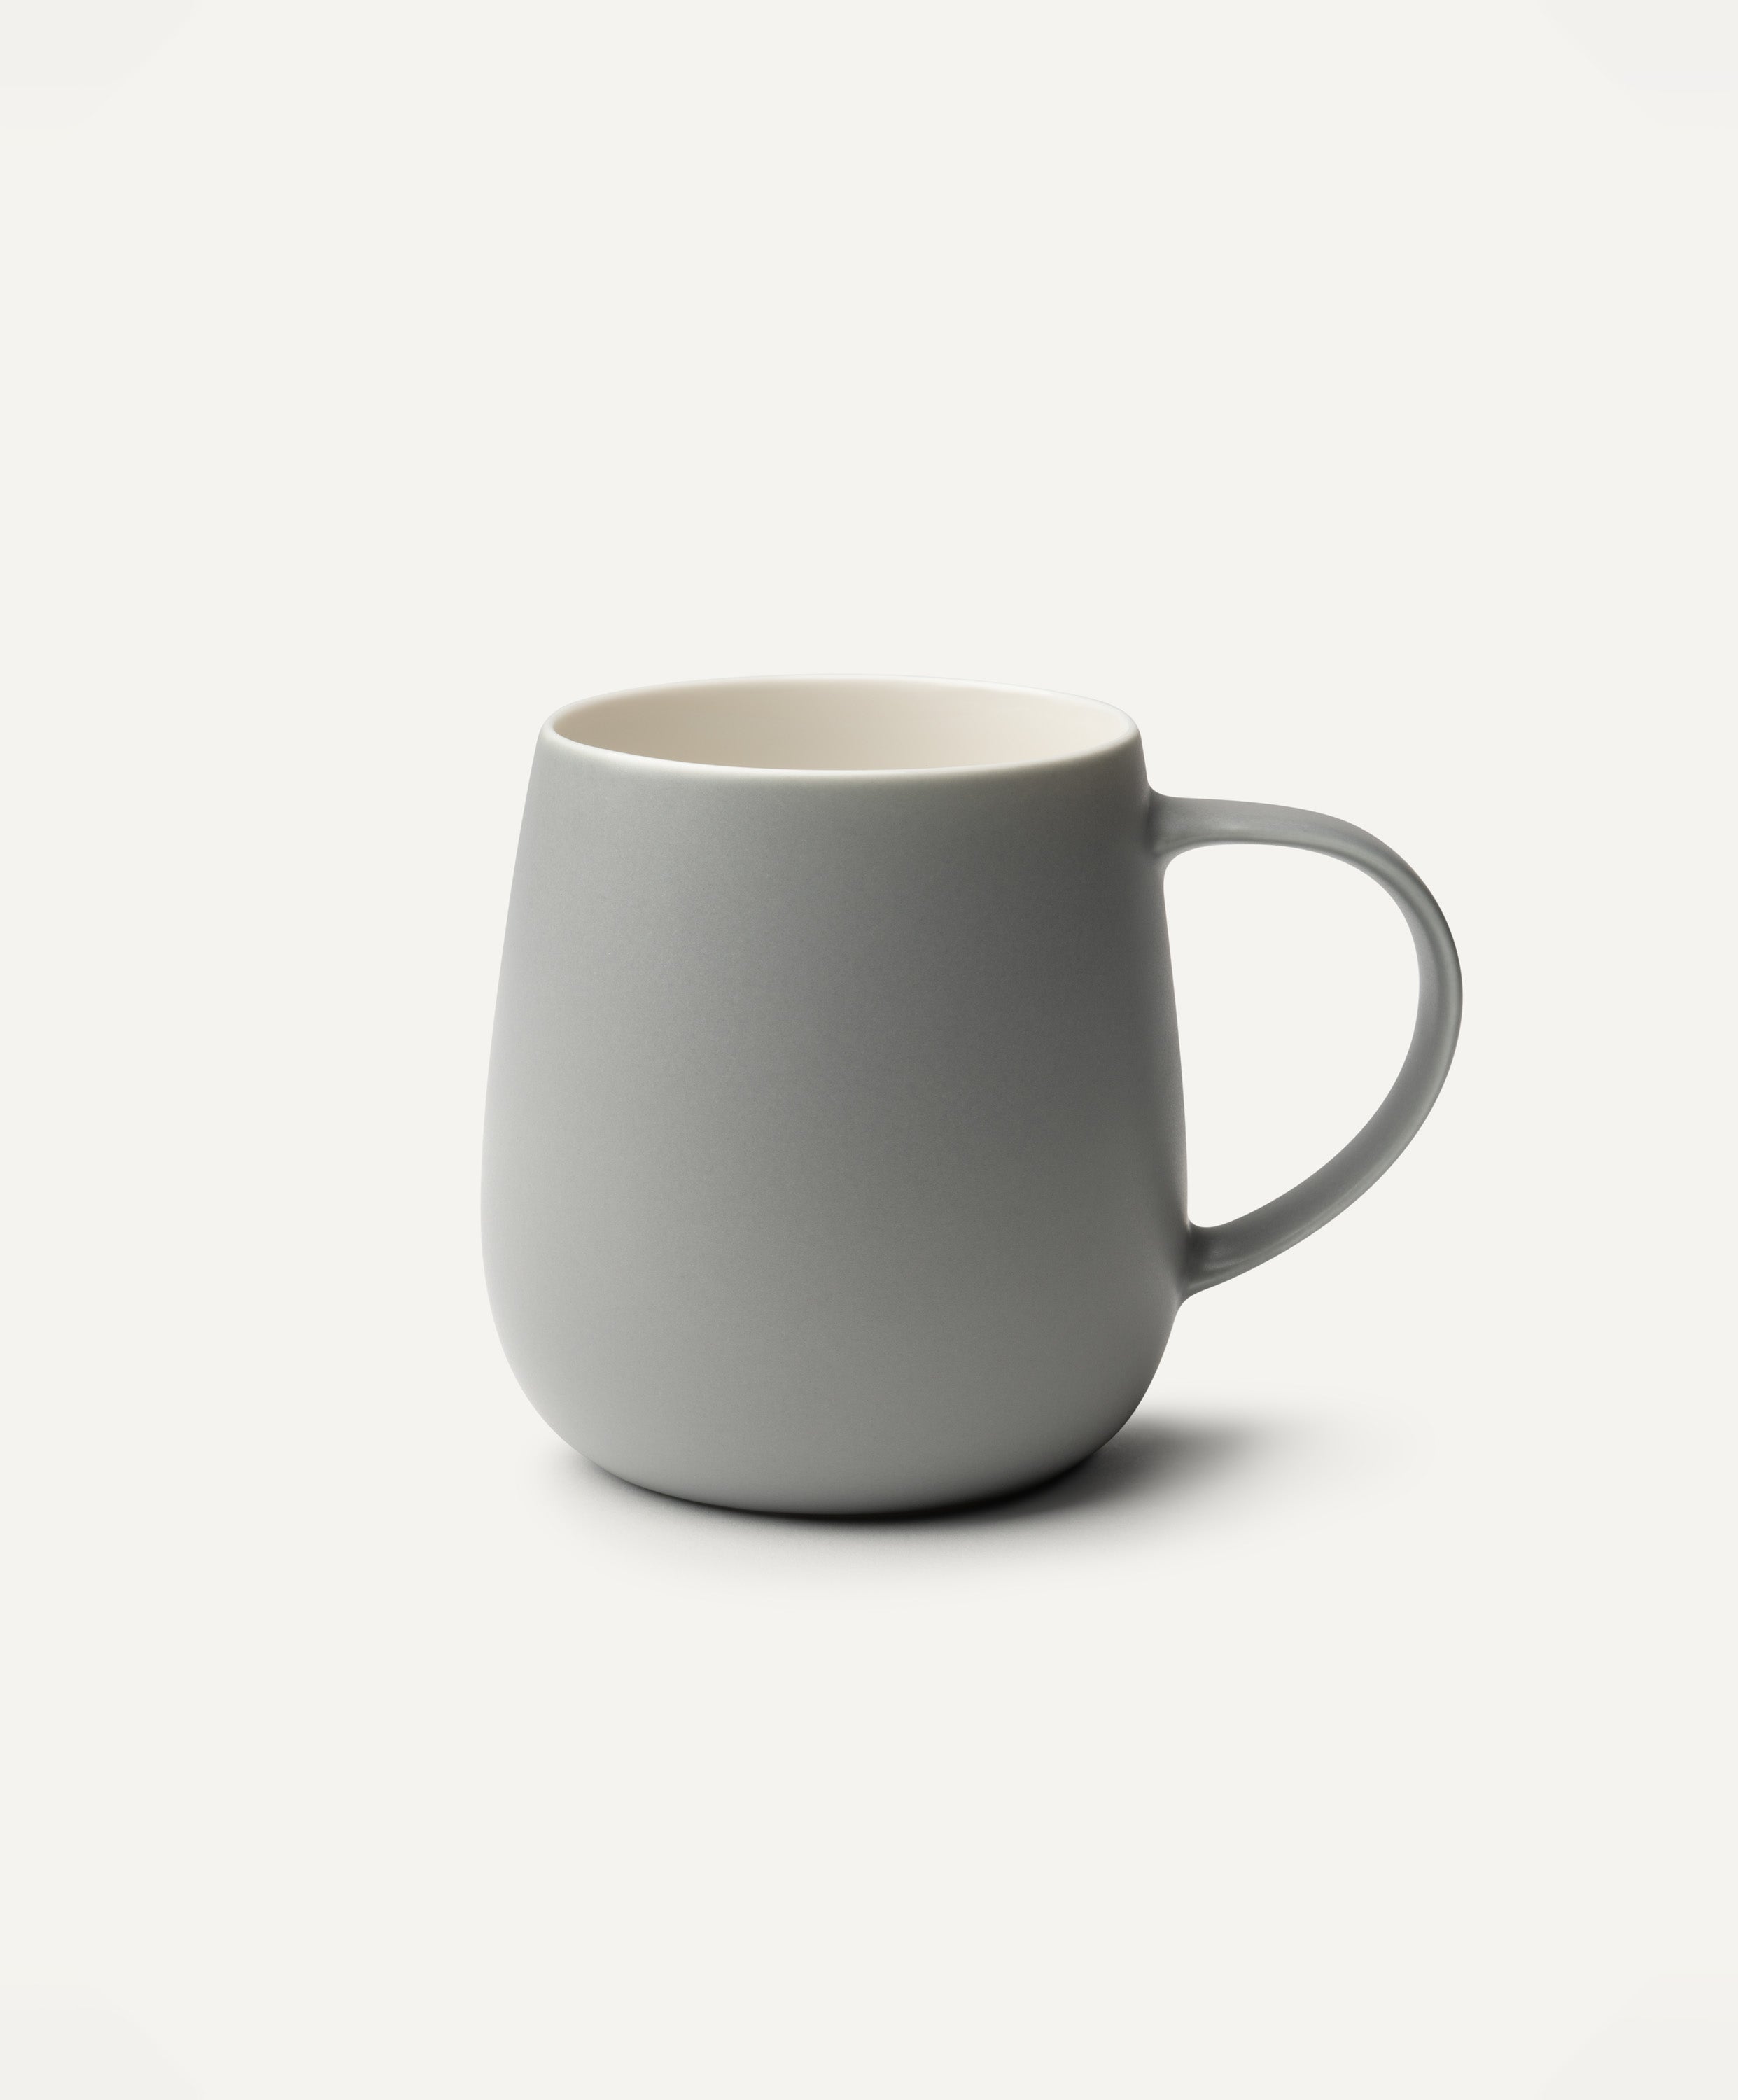 Ui 2 Self-heating Mug - Mug Only